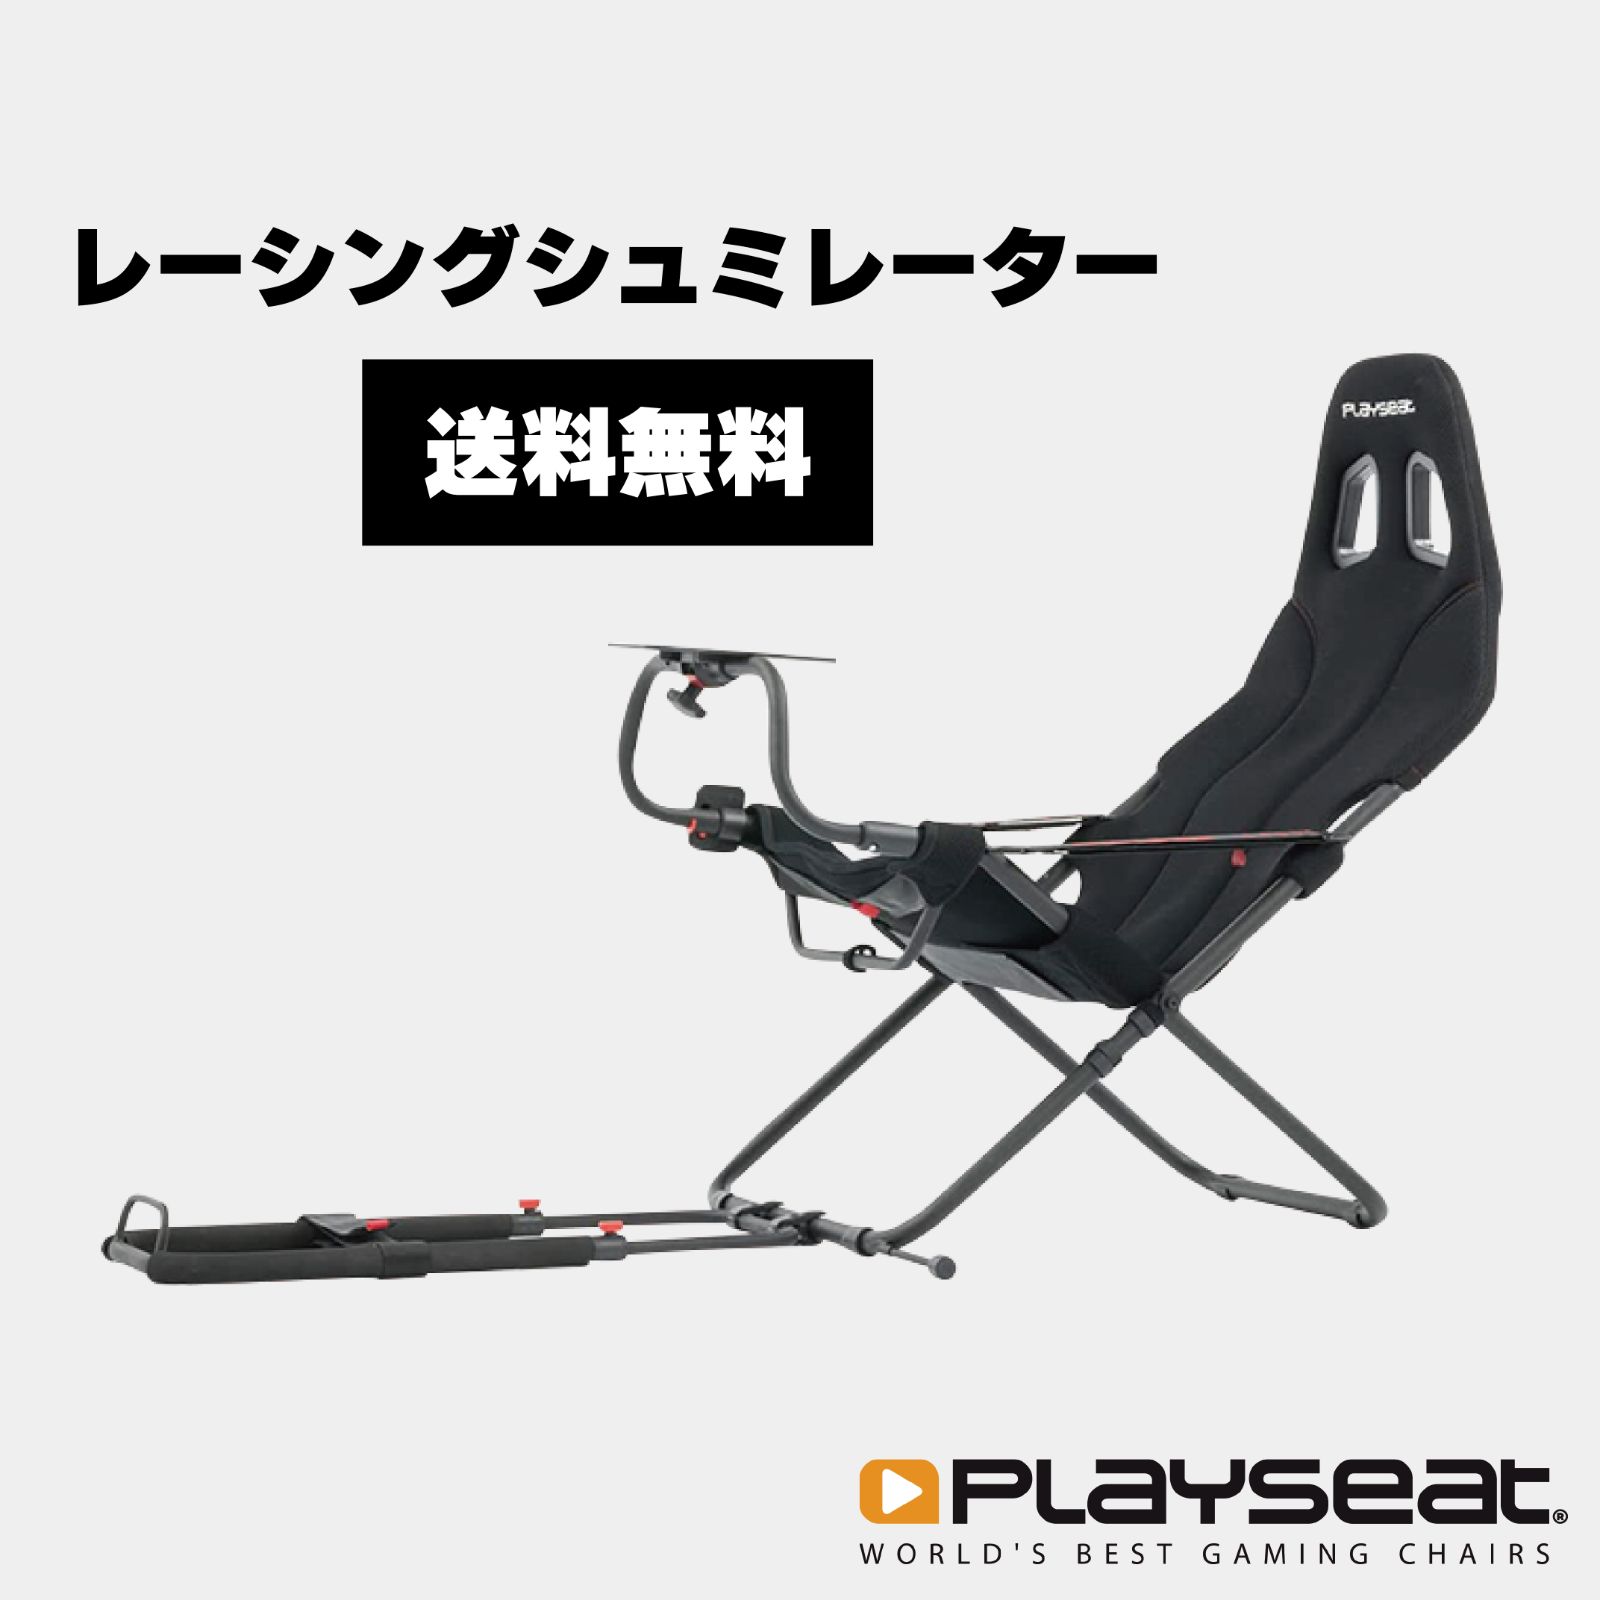 Playseat レーシングシミュレータ Challenge - テレビゲーム